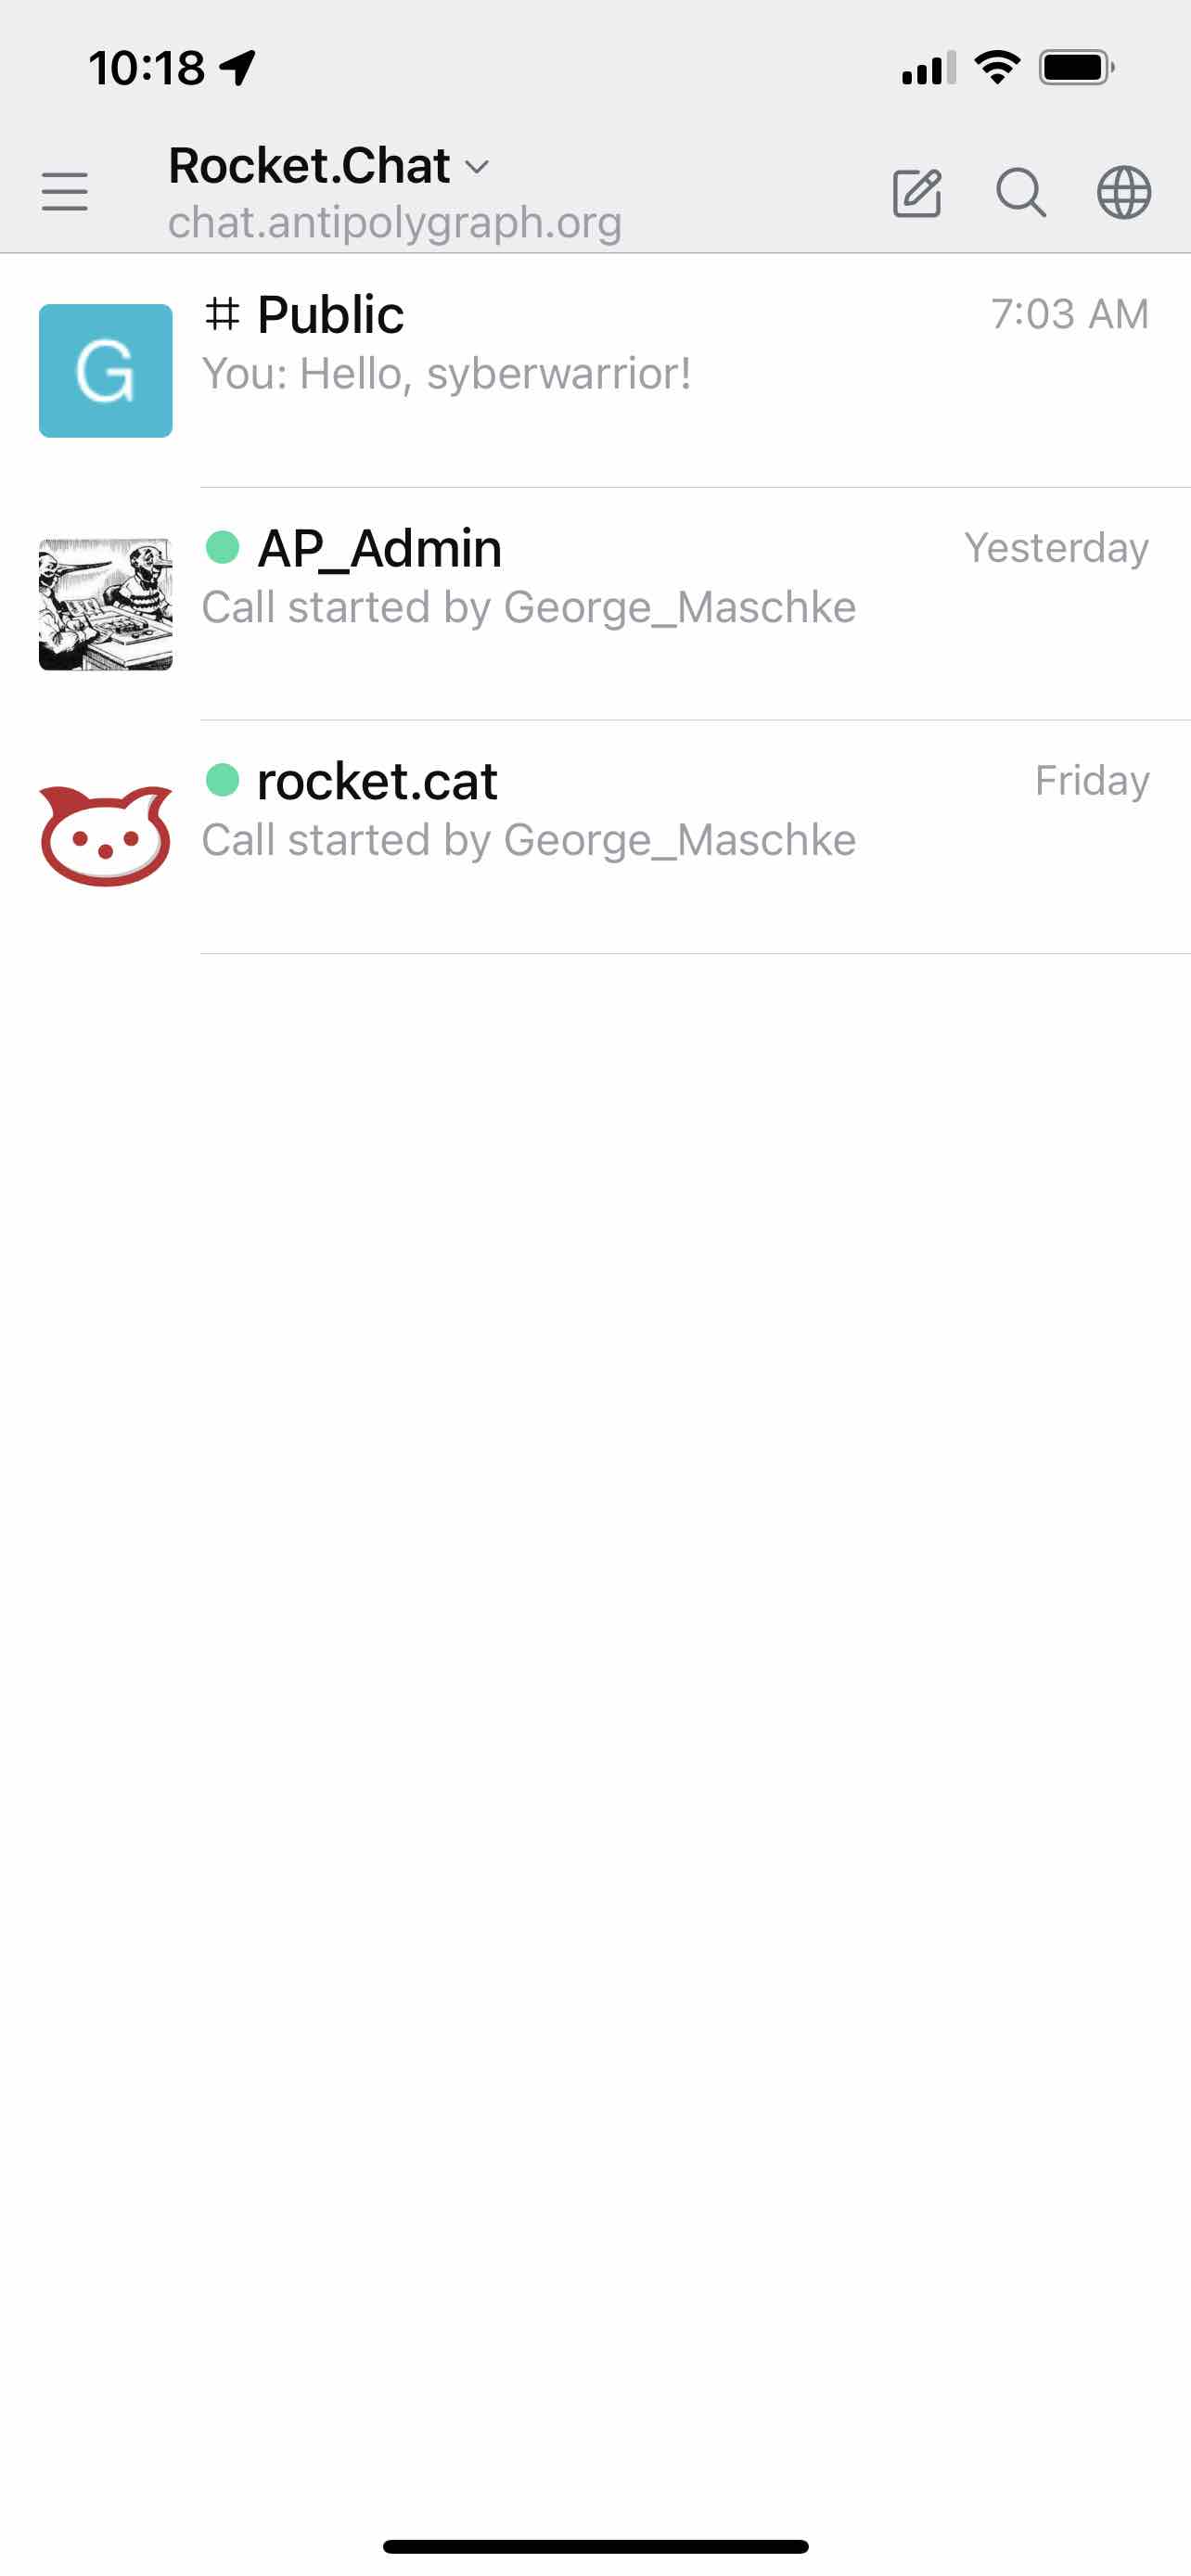 rocketchat-mobile-client.jpg